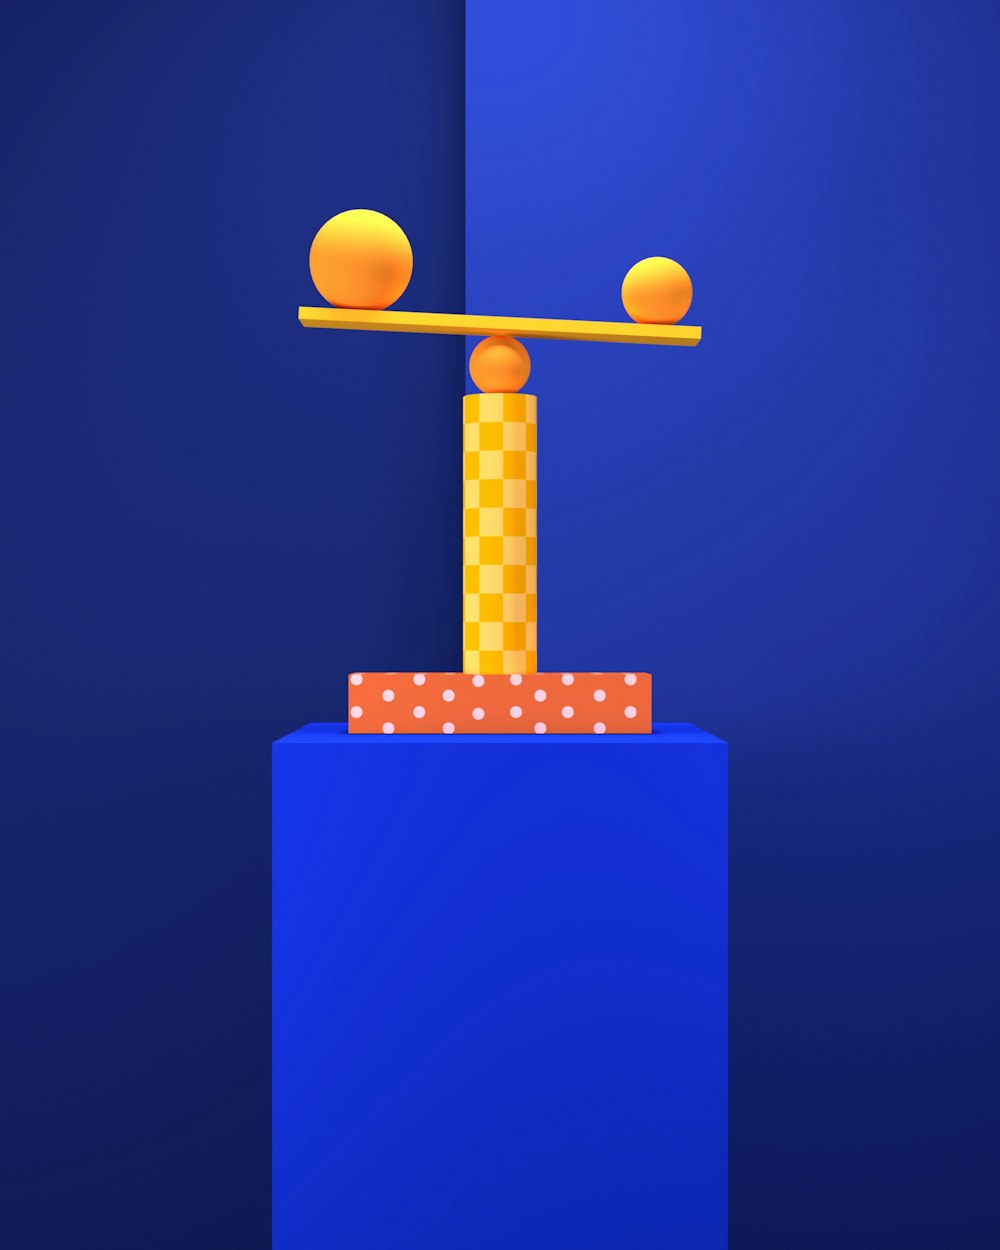 Una imagen generada por computadora de una viga de equilibrio con bolas en ella